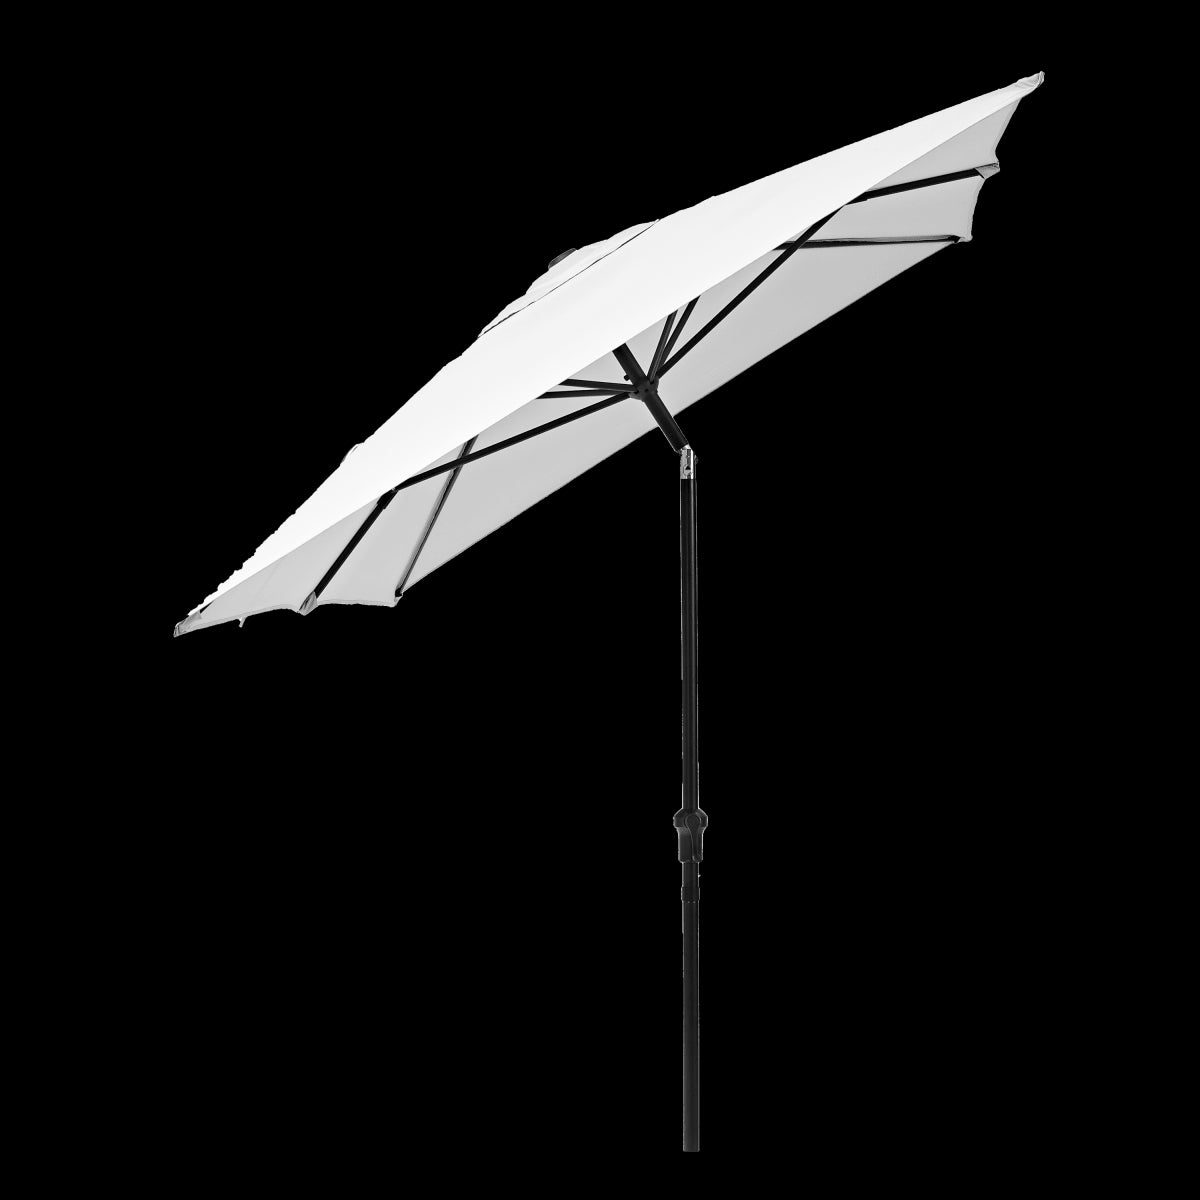 AVEA NATERIAL - aluminum umbrella with white polyester tarp 2X3 m